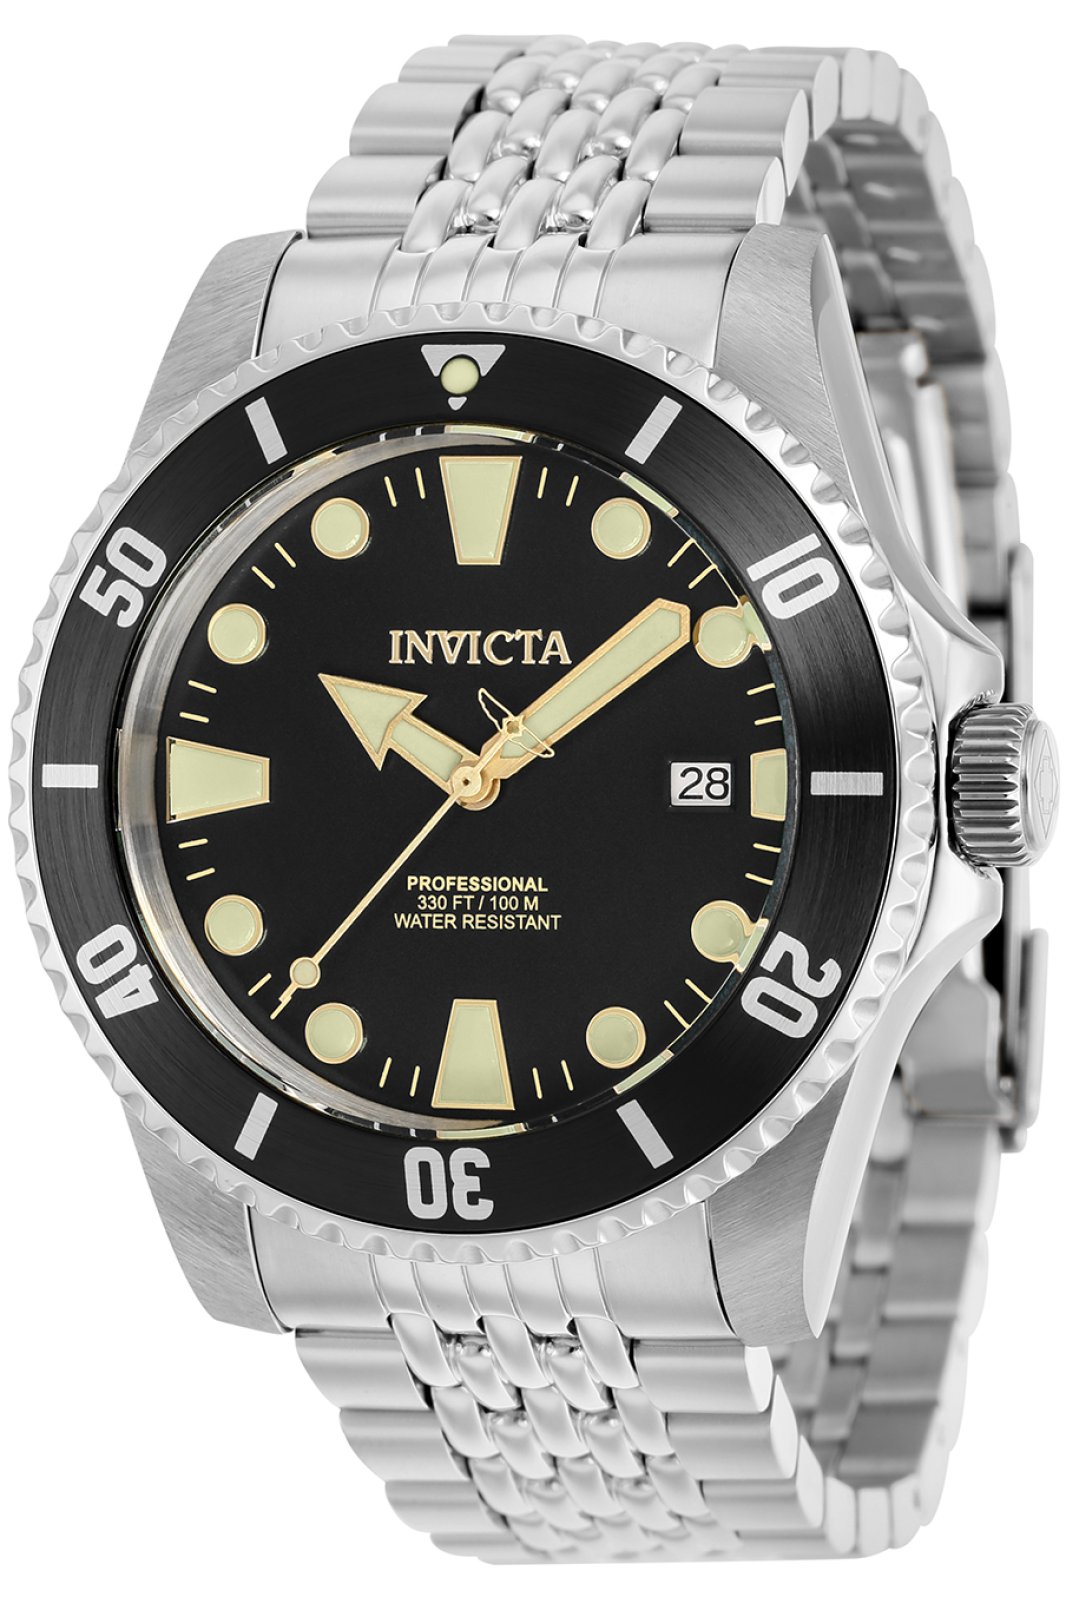 Invicta Pro Diver 39755 Men's Automatic Watch - 44mm